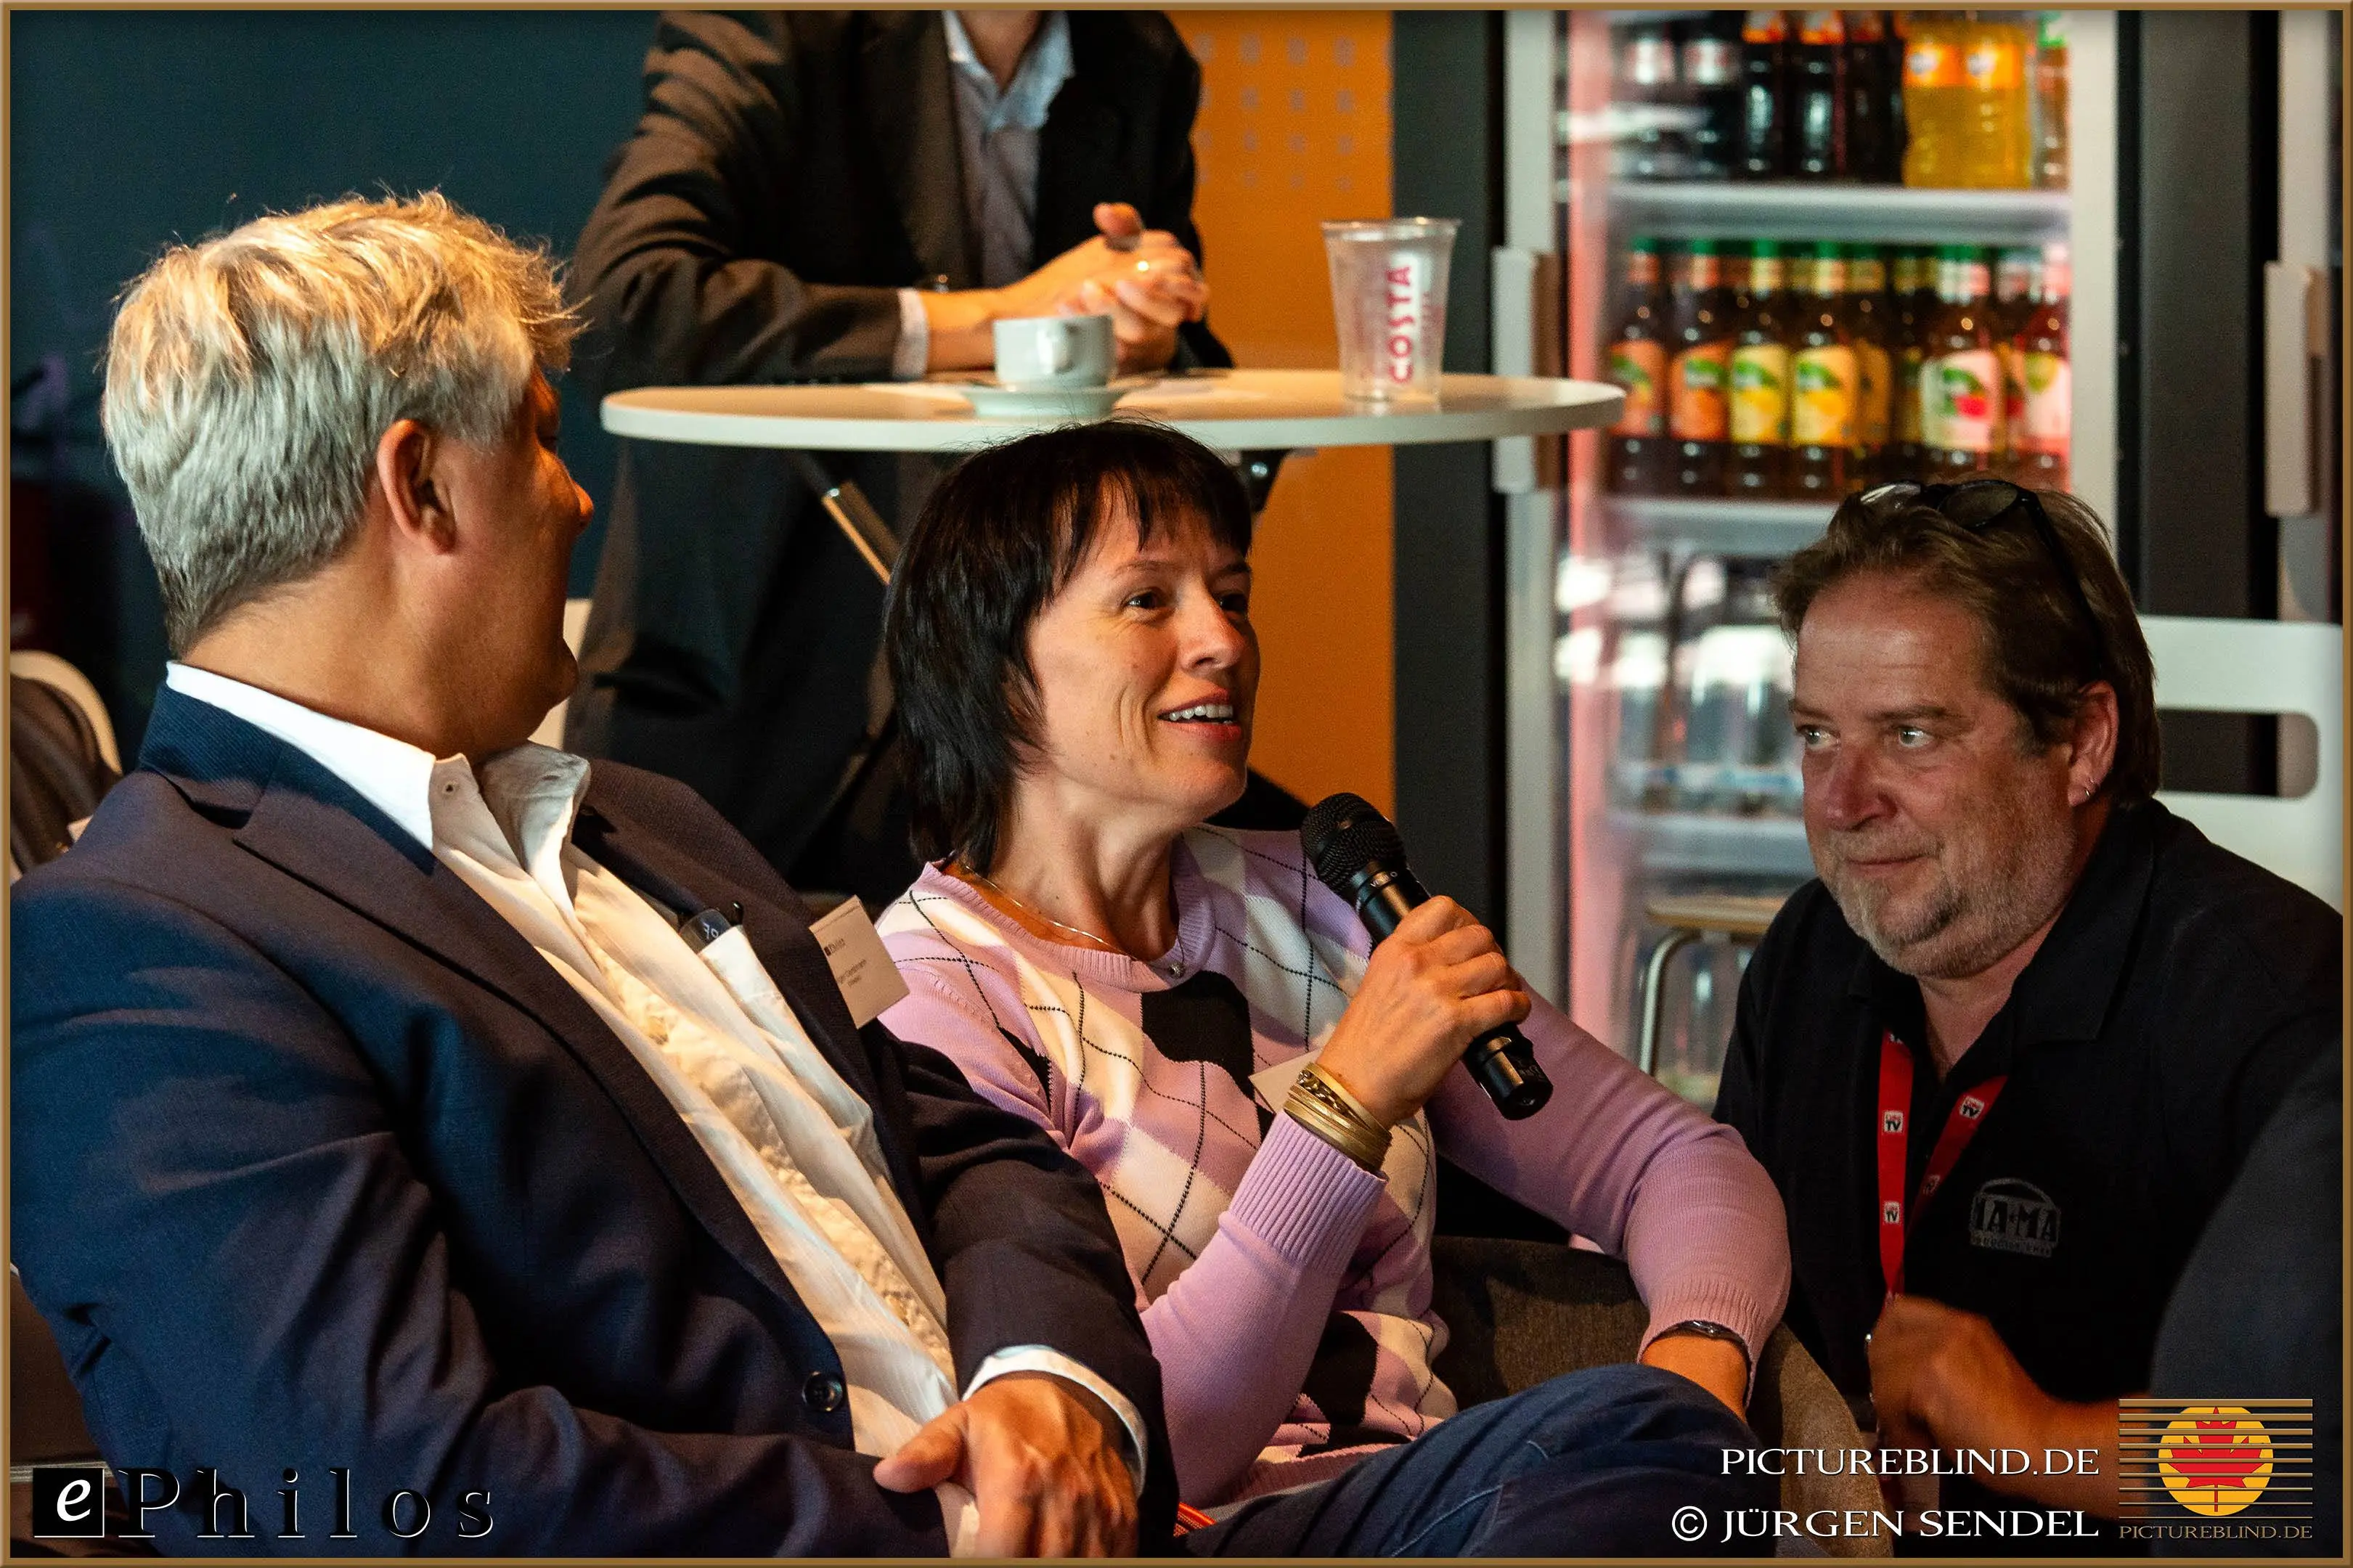 Teilnehmerin spricht mit einem Mikrofon, während sie in einer Lounge sitzt, umgeben von anderen Teilnehmern und Getränken im Hintergrund